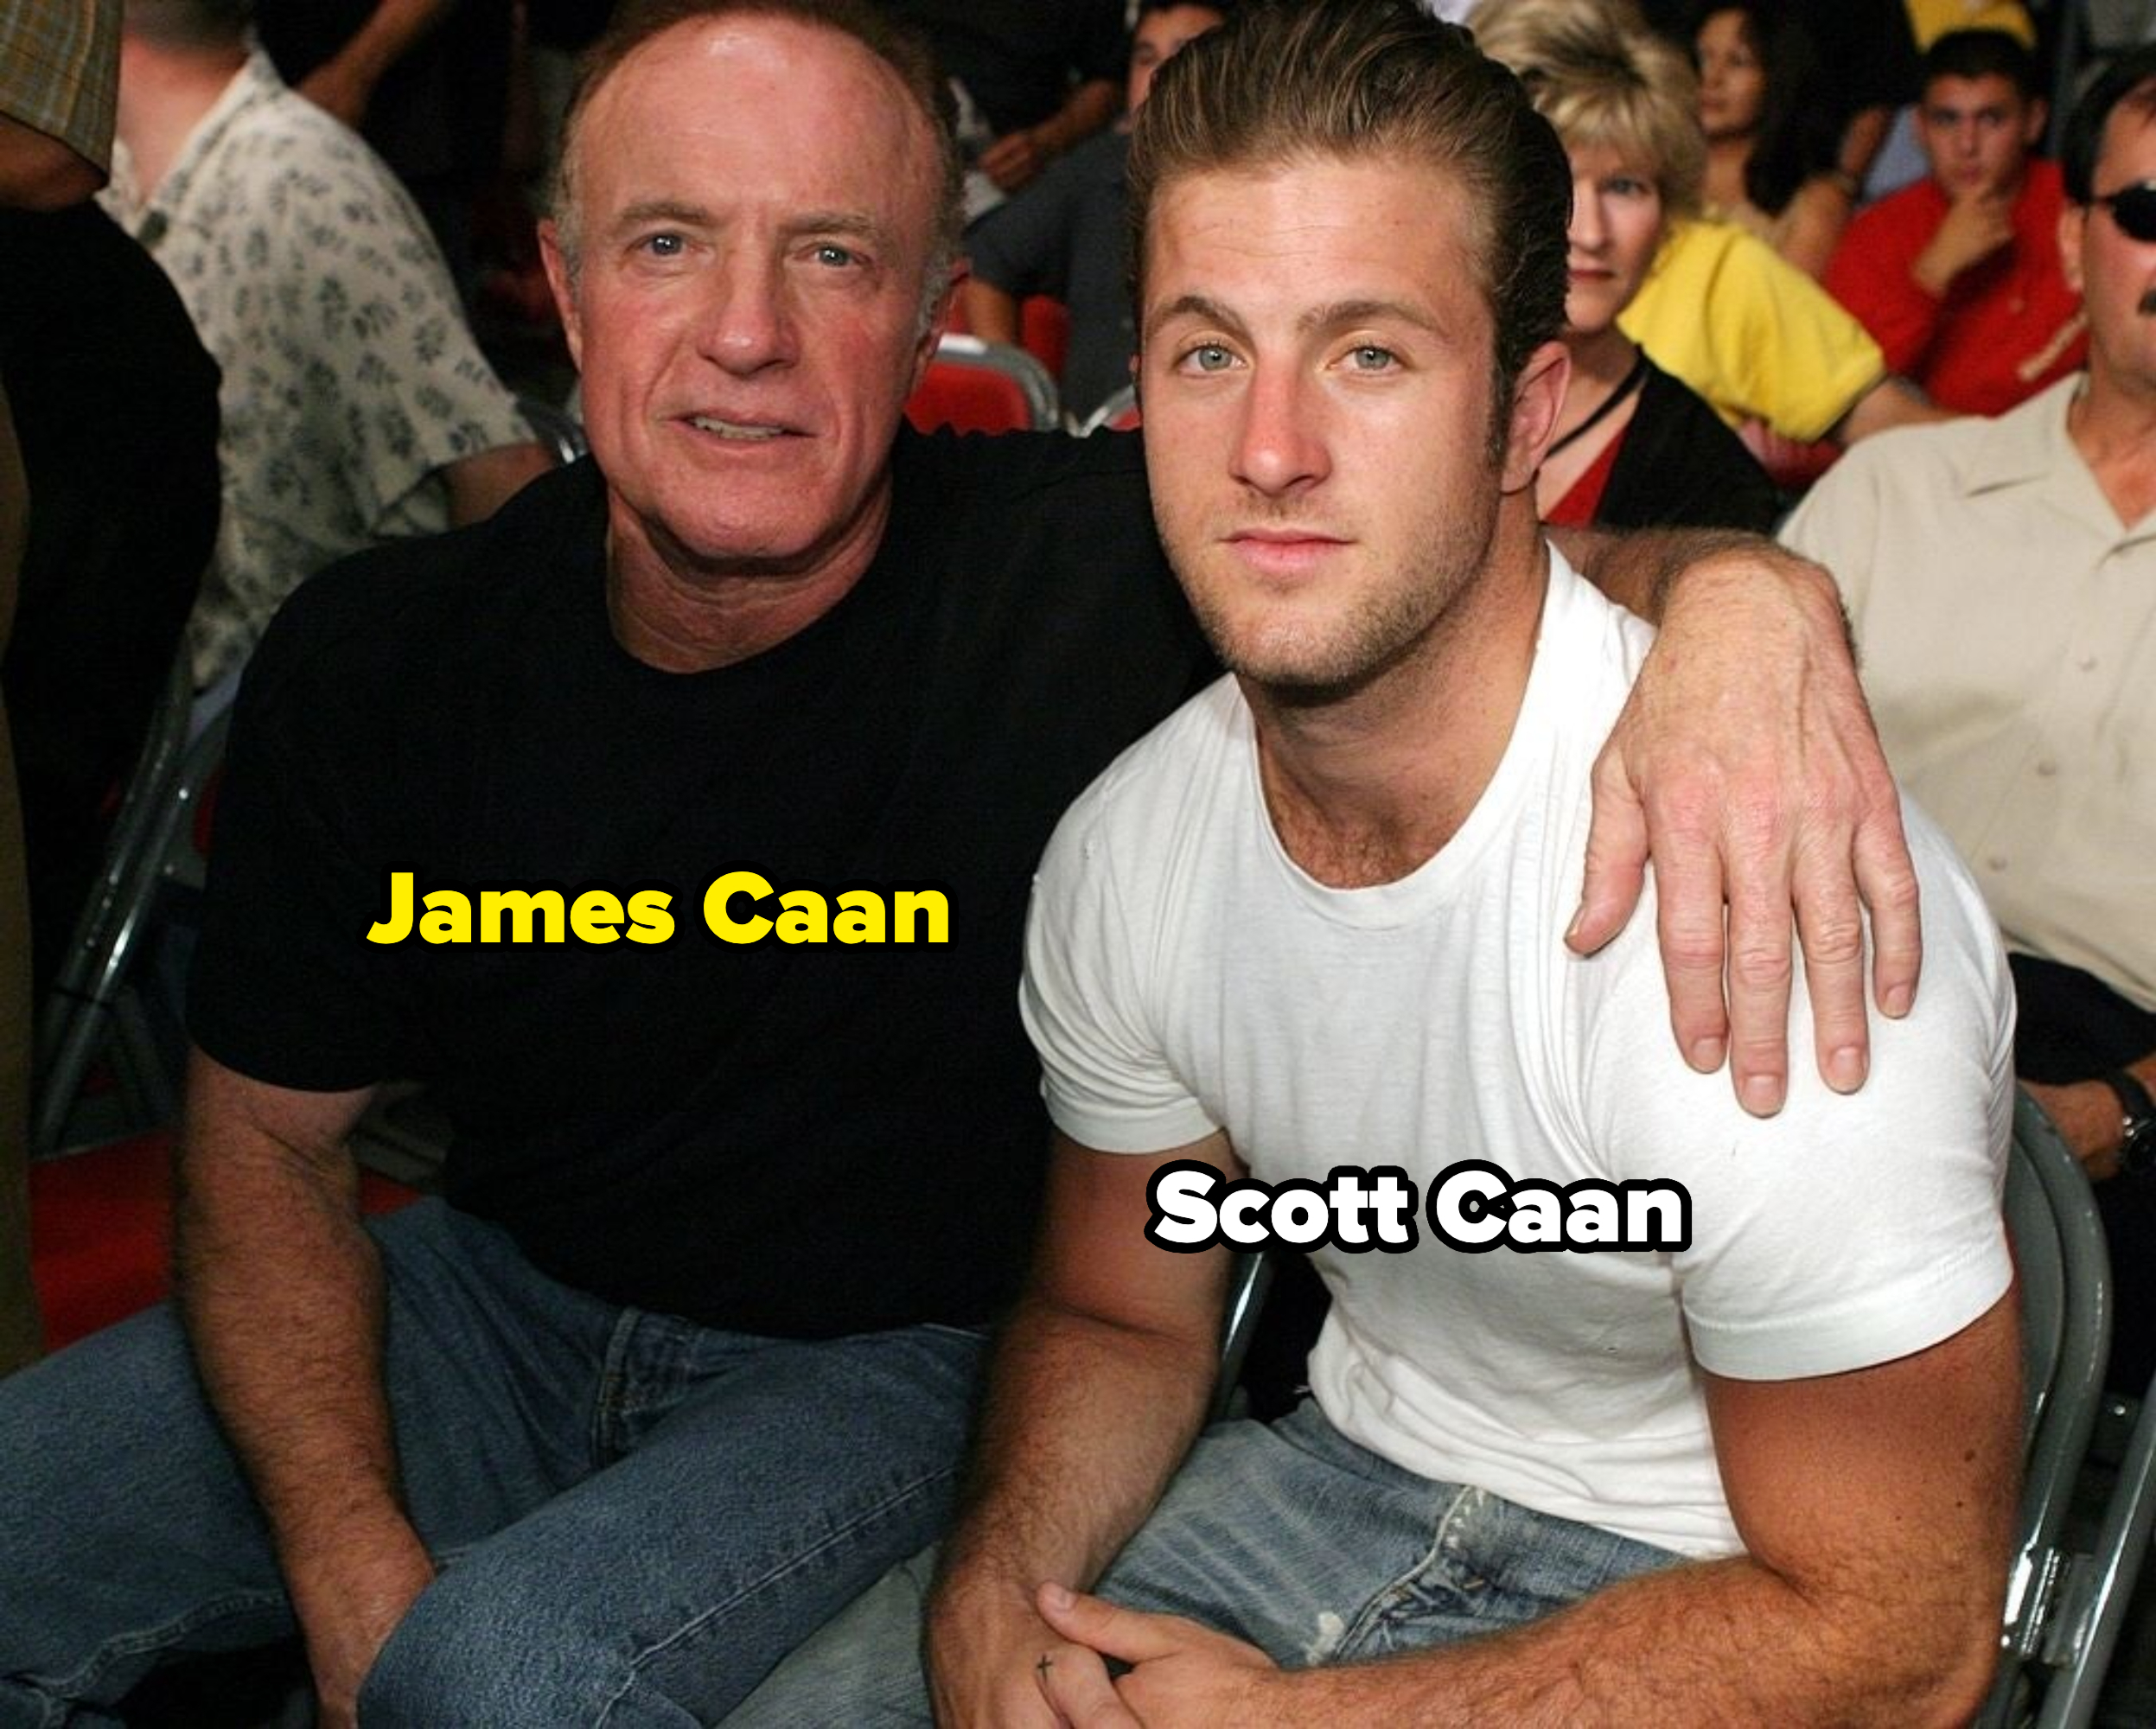 James and Scott Caan